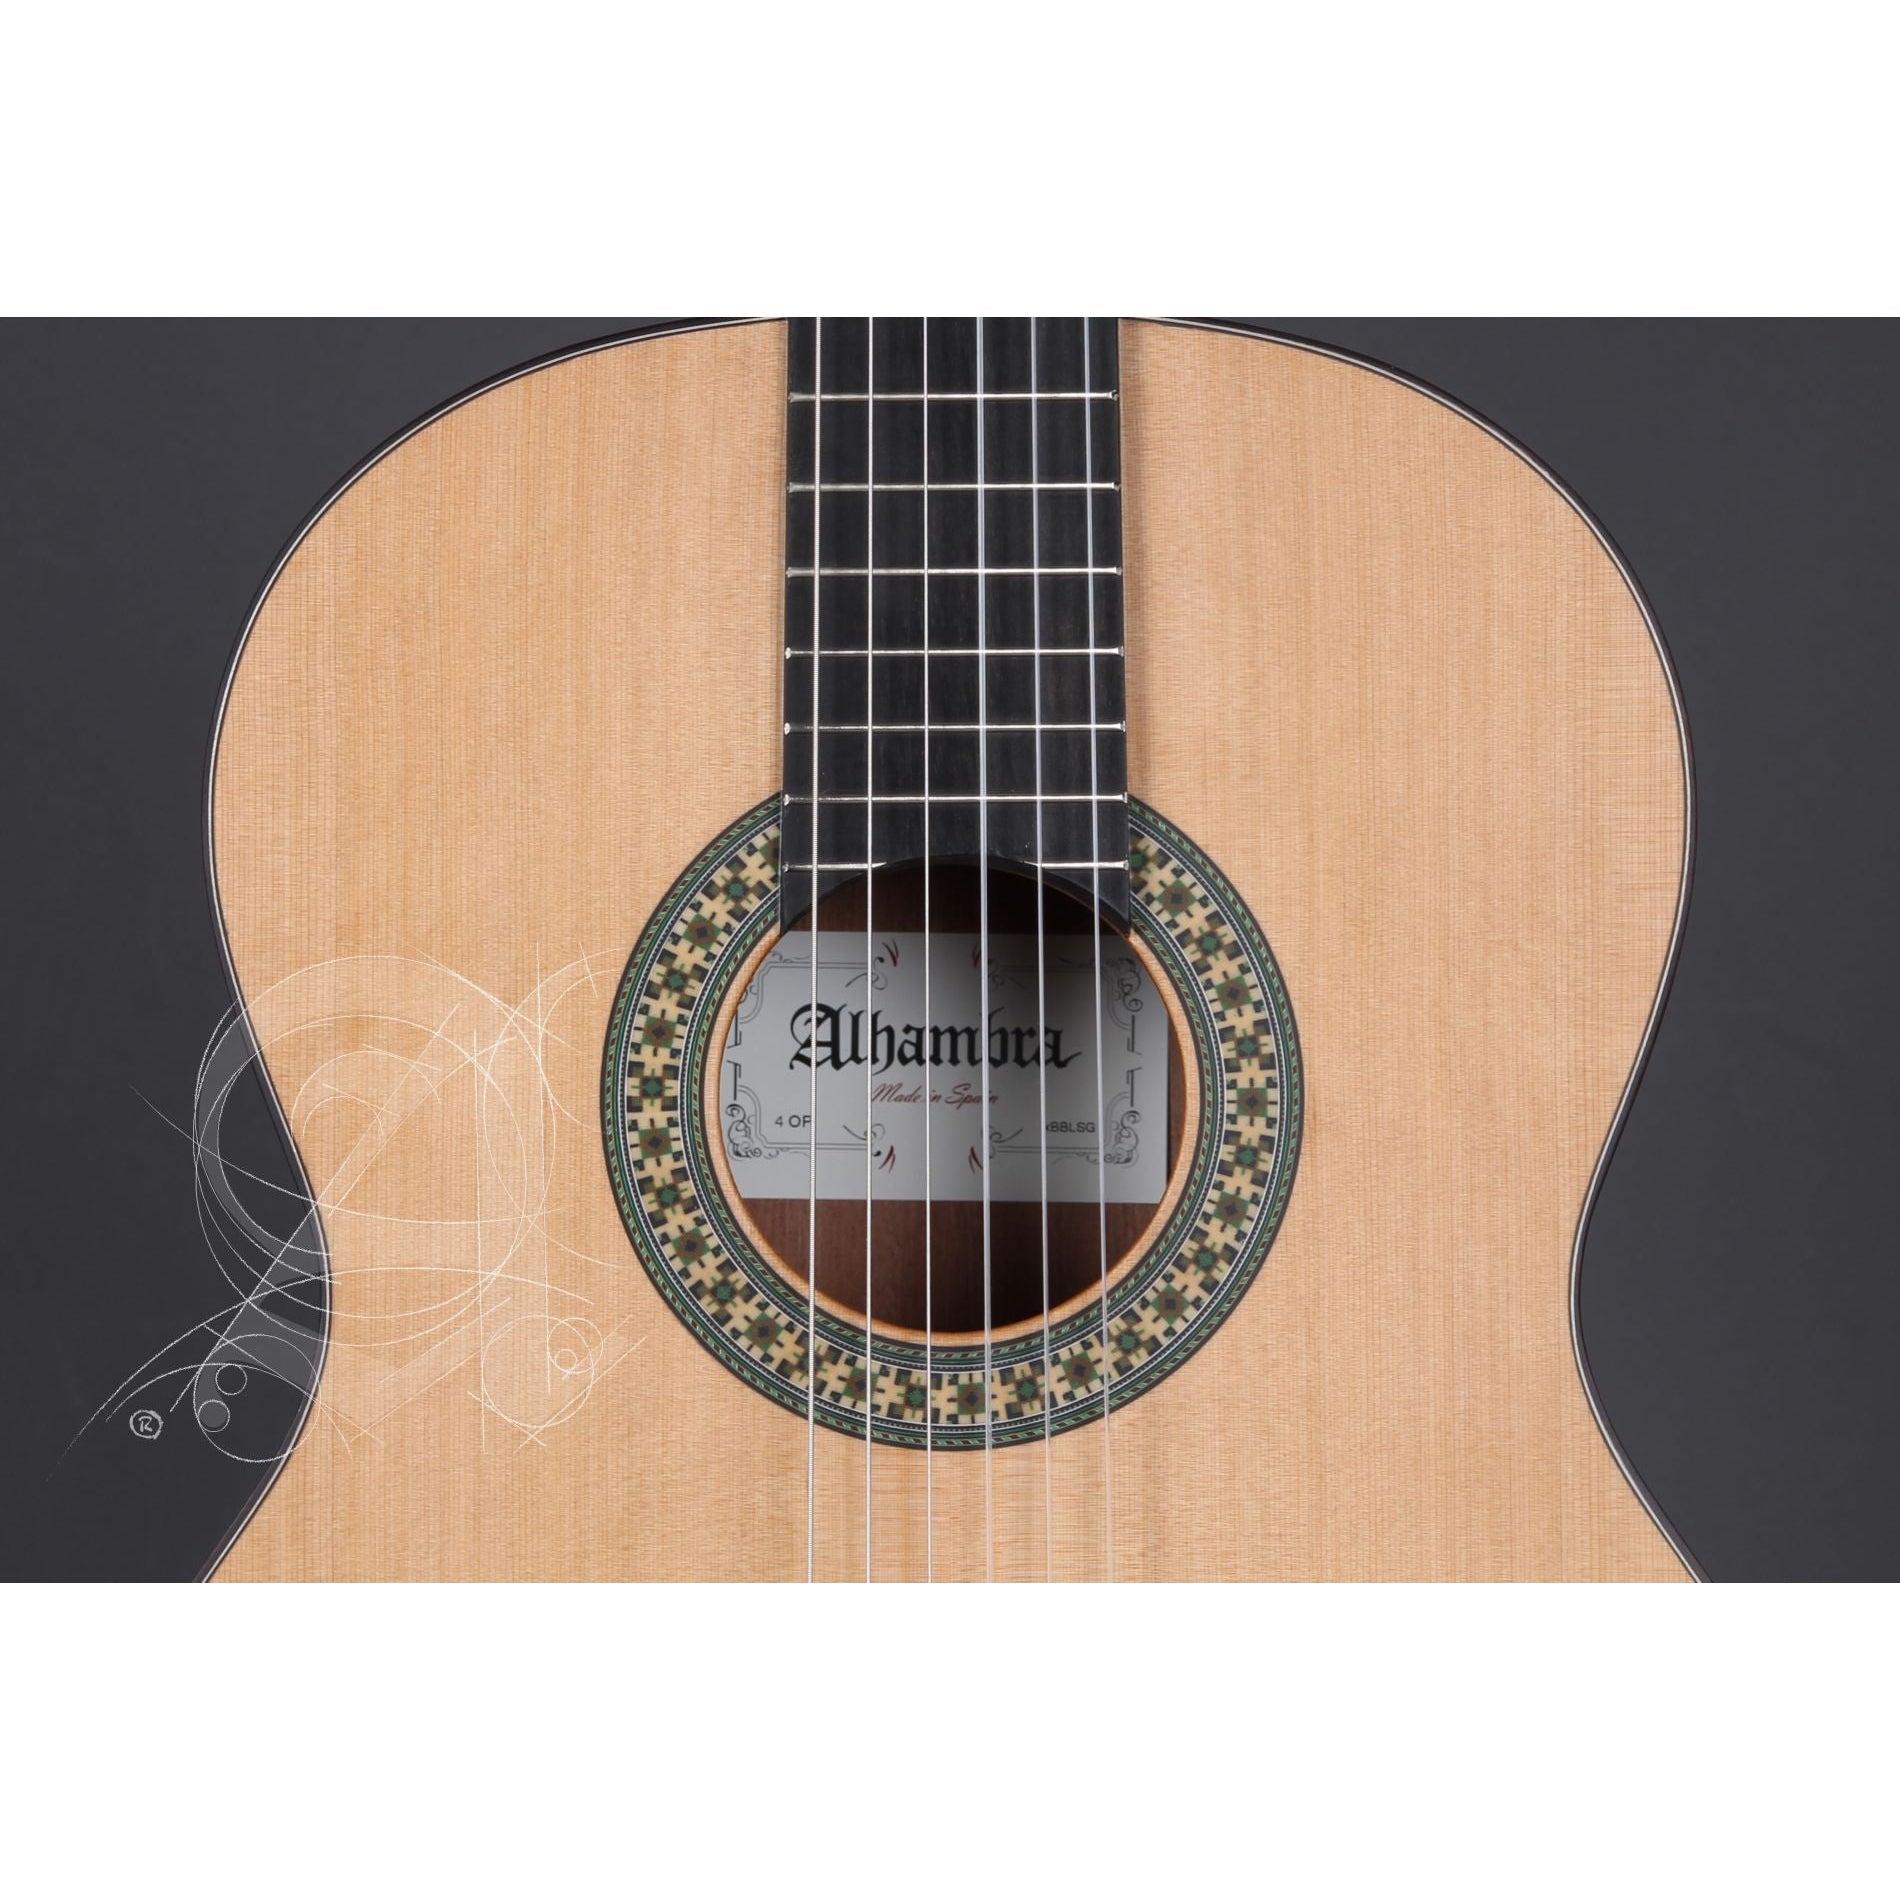 Đàn Guitar Classic Alhambra 4P - Việt Music